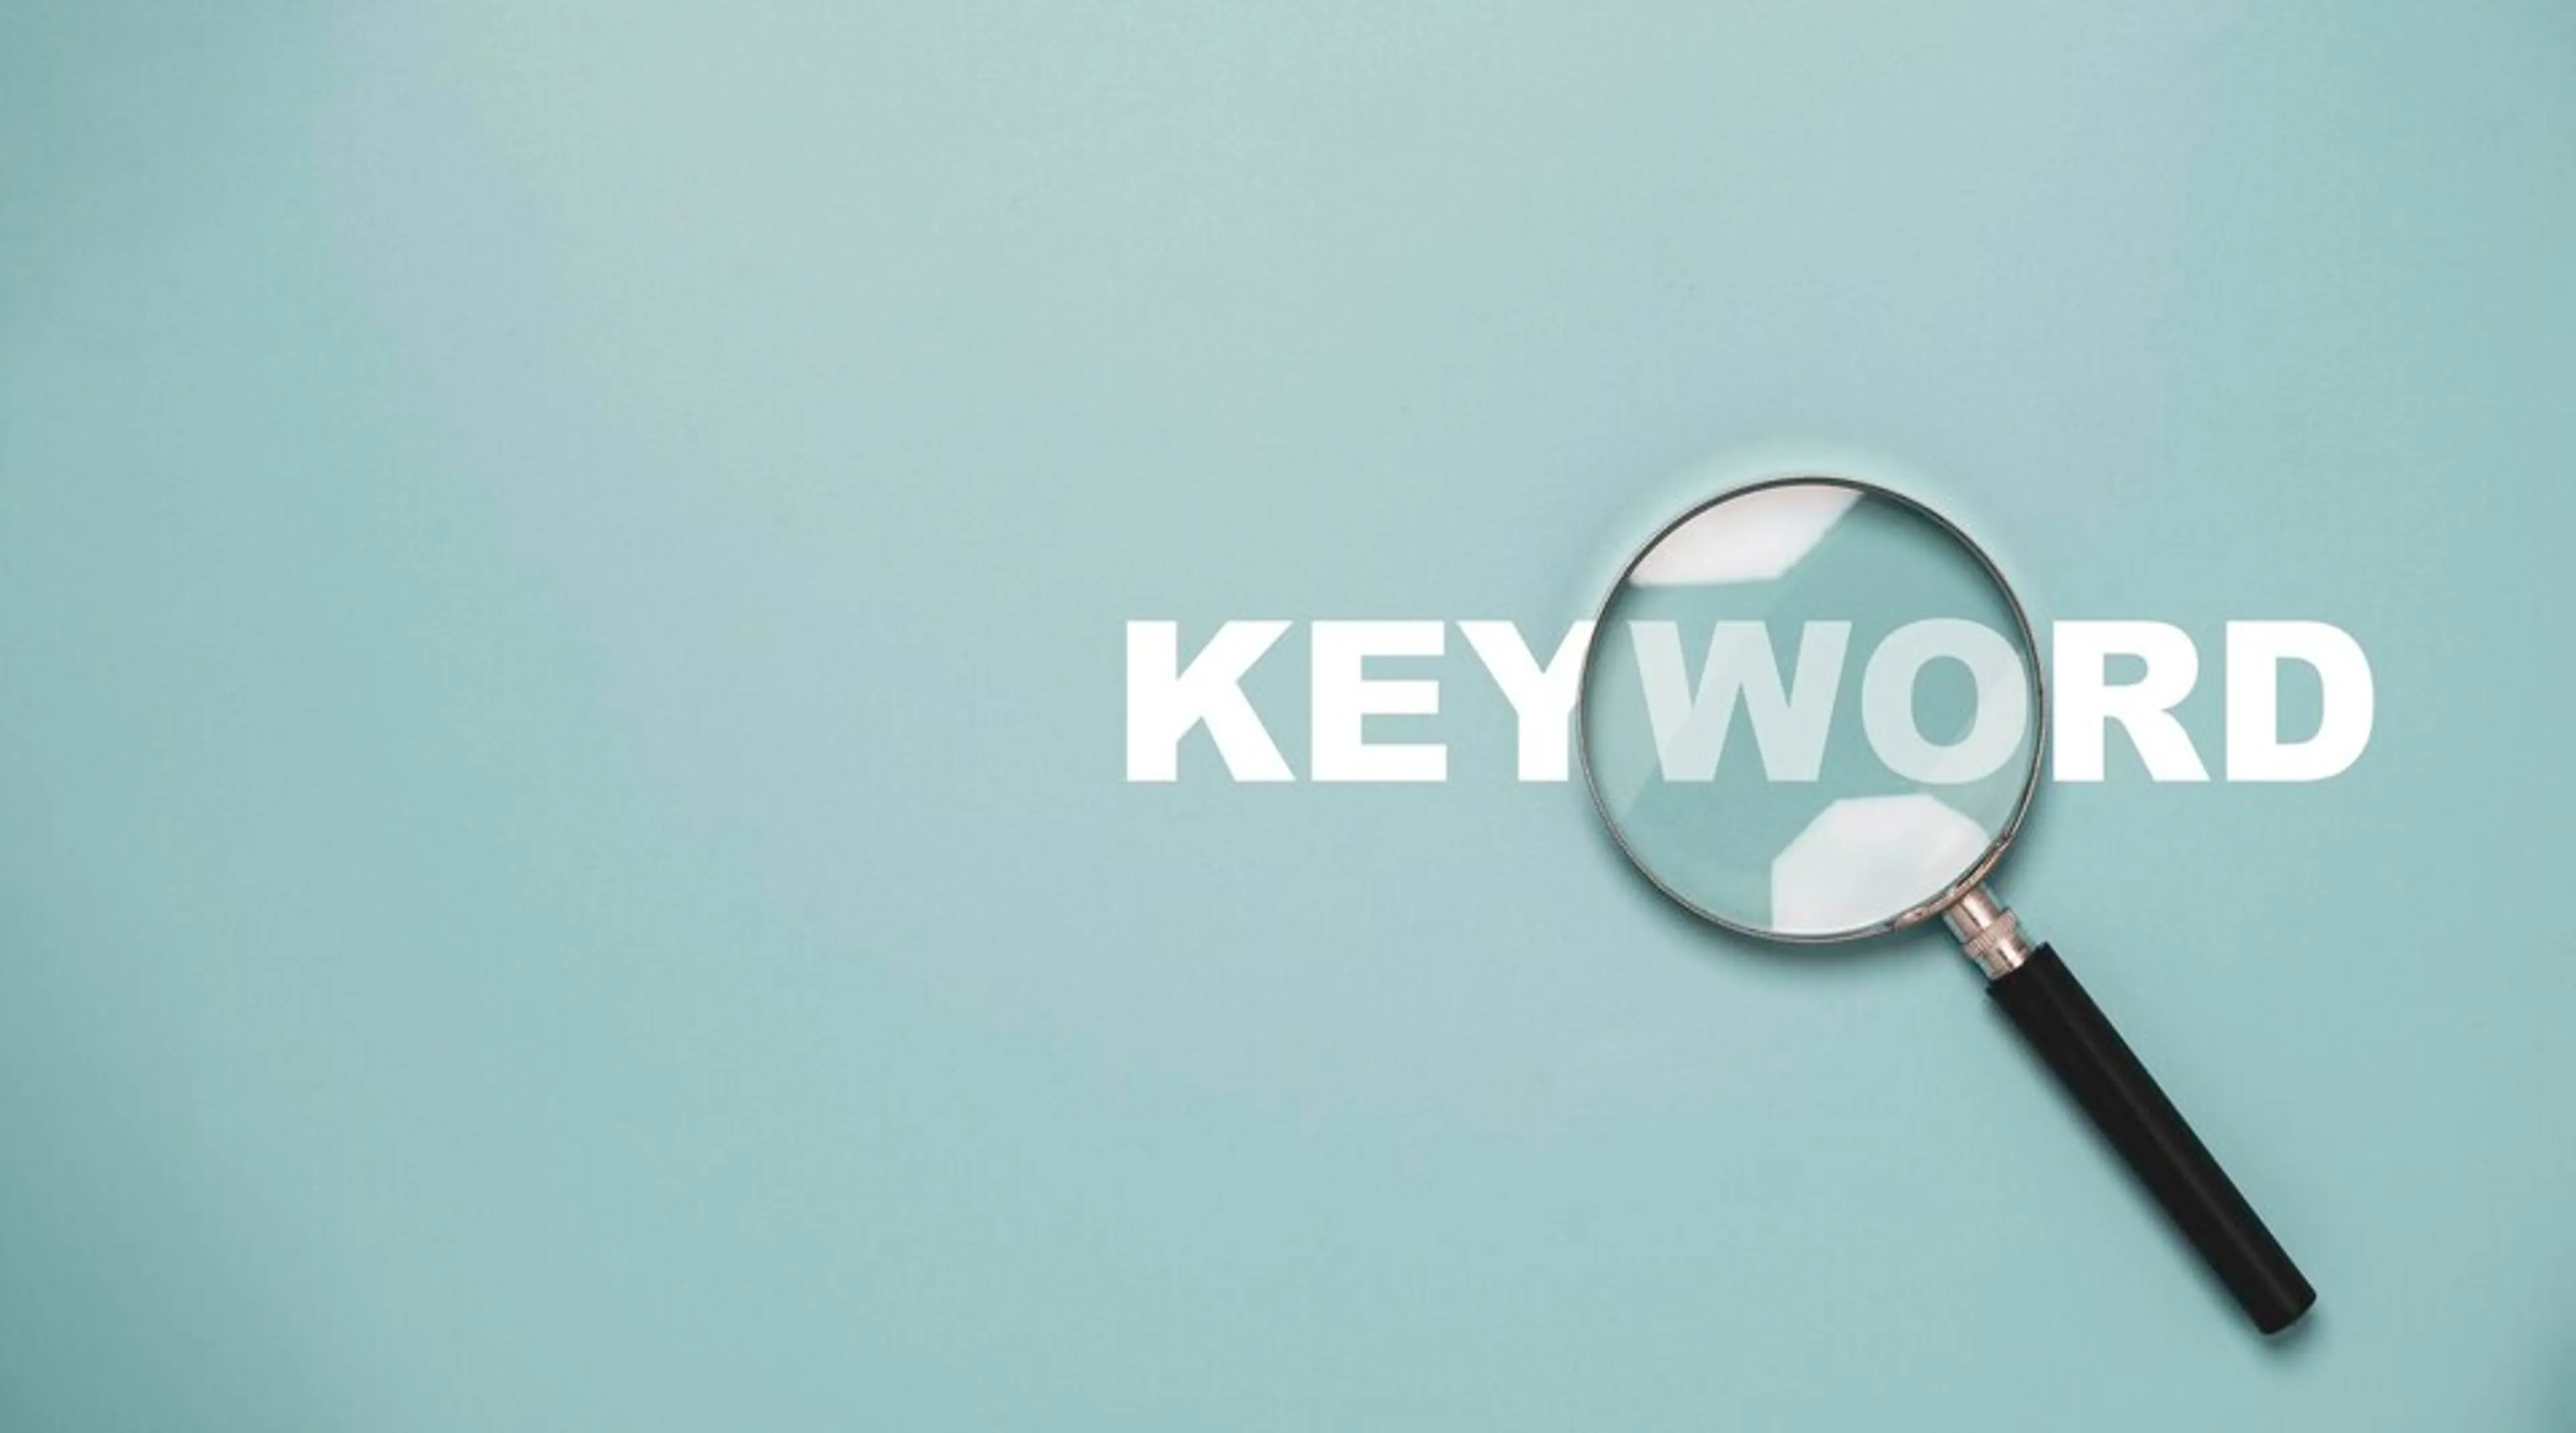 Keyword là gì và tại sao nó quan trọng đối với việc tối ưu hóa nội dung?